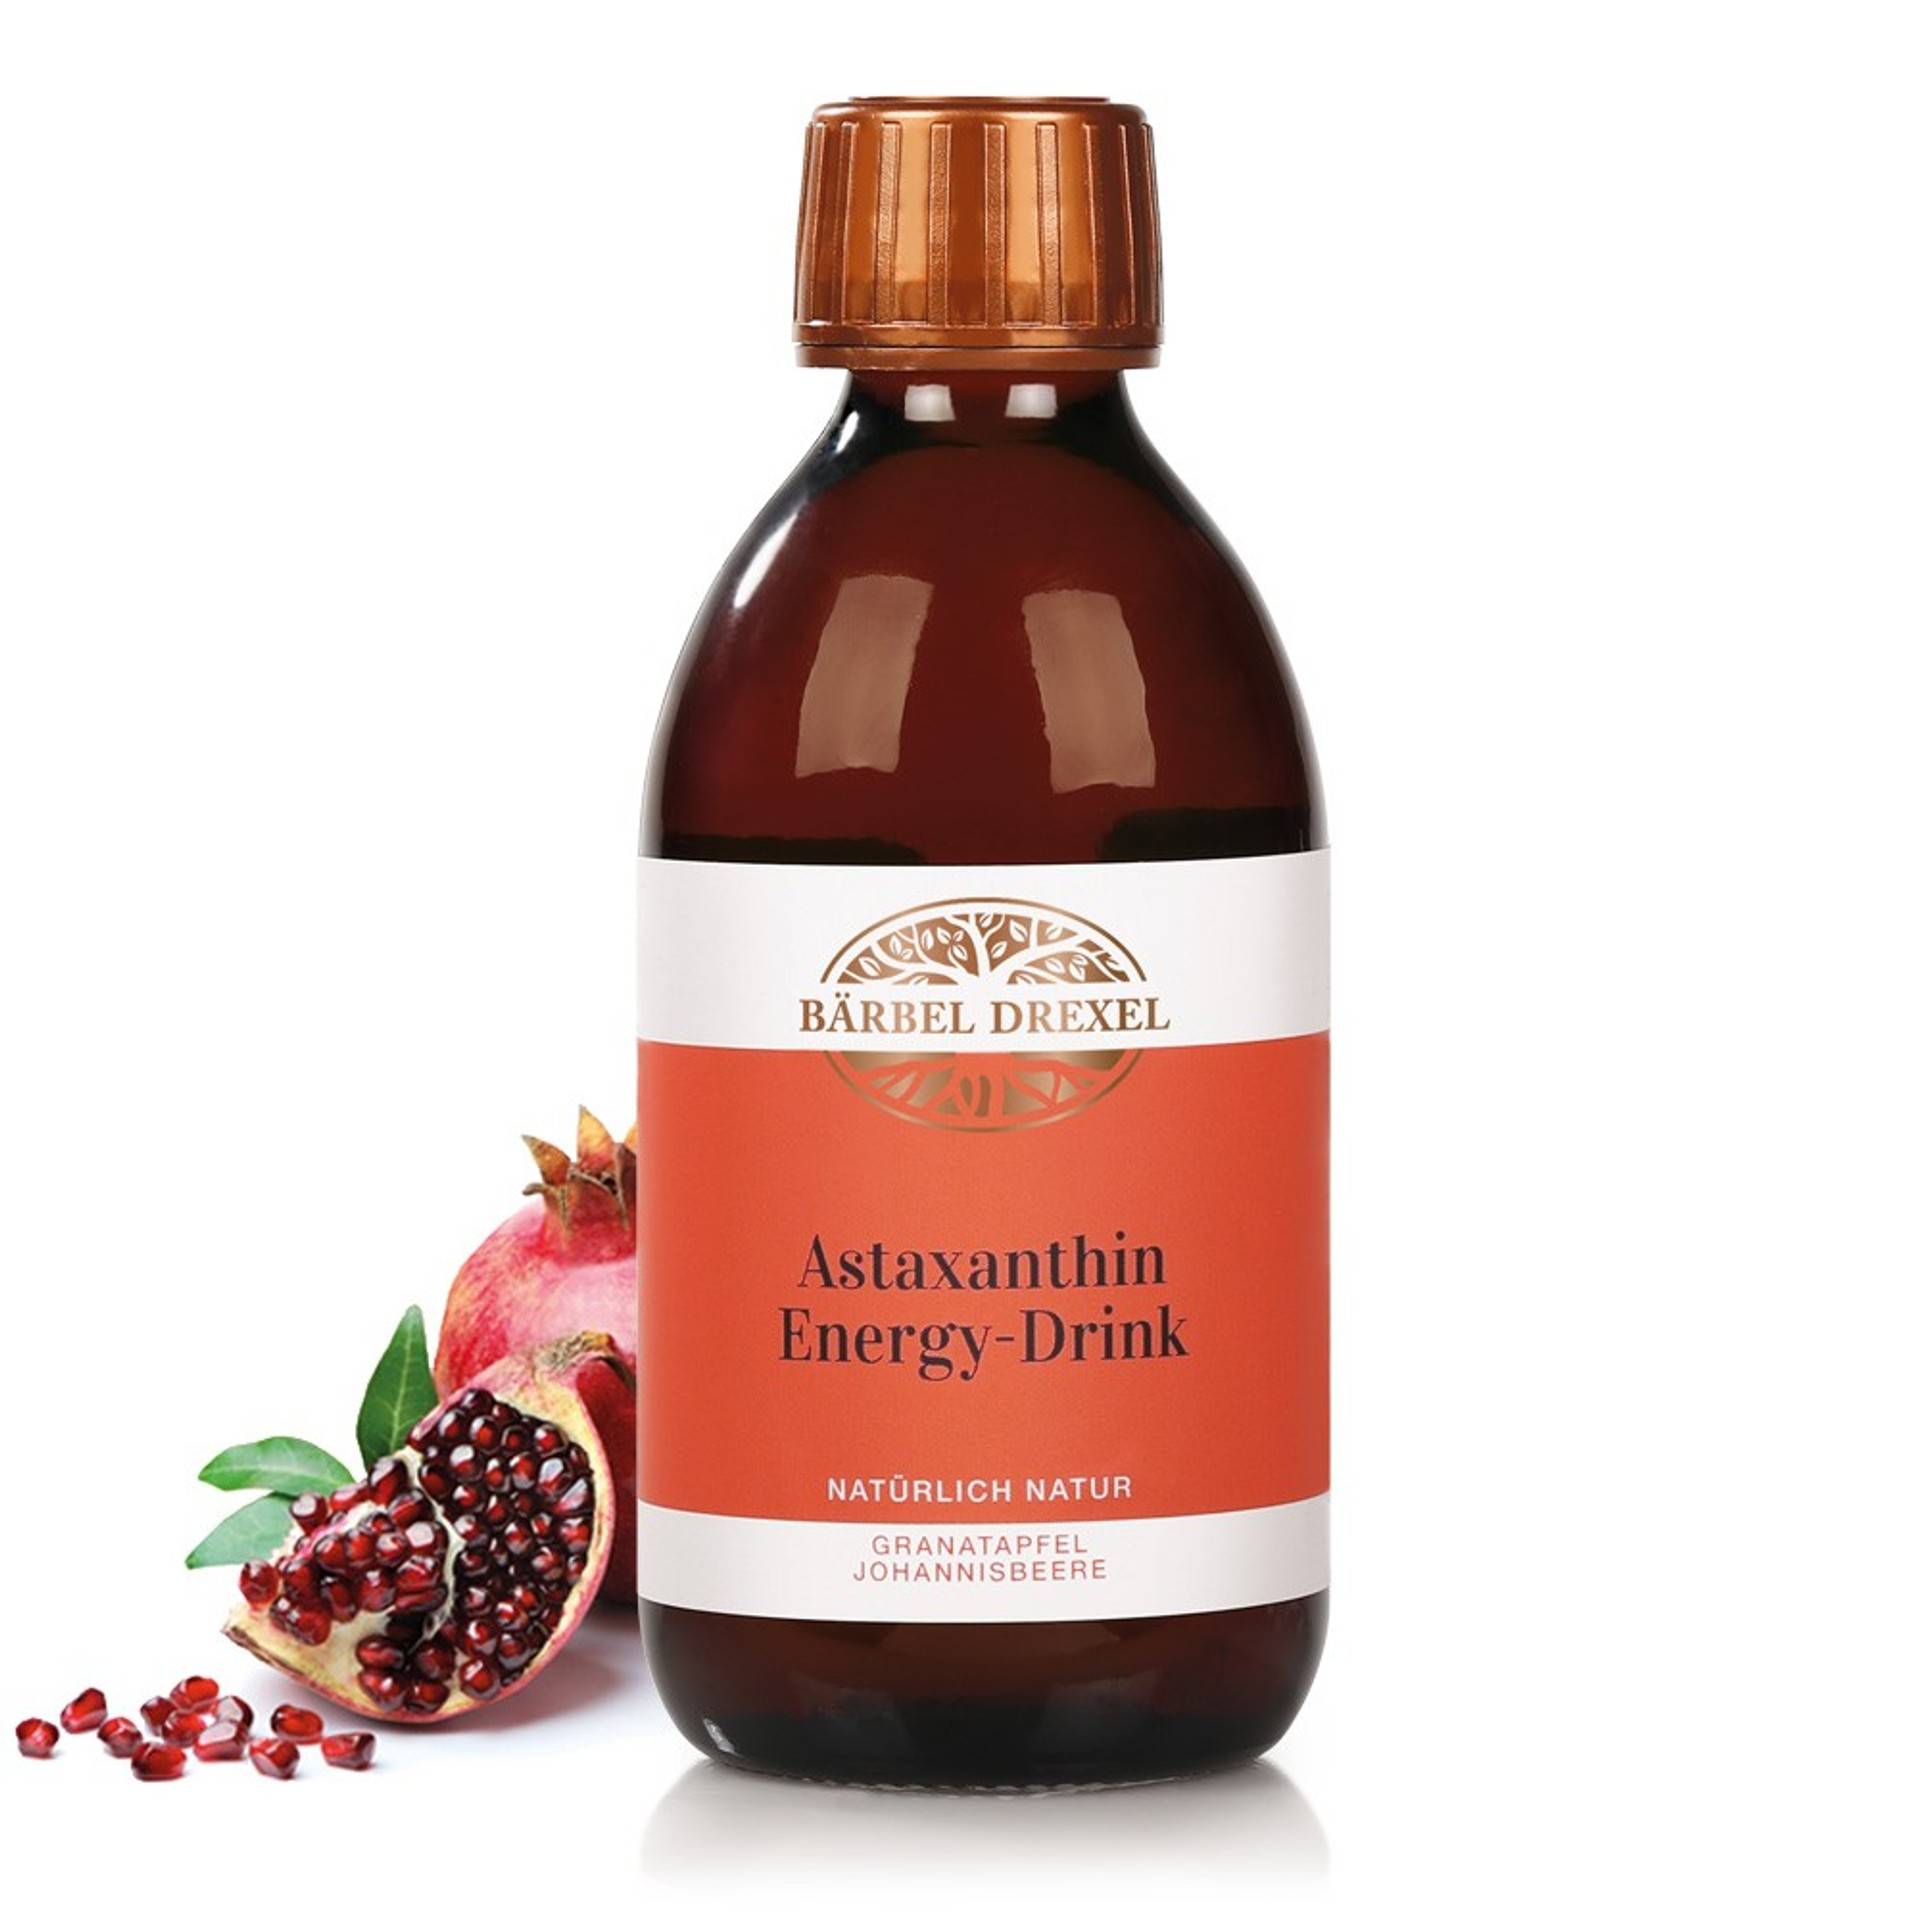 astaxanthin-energy-drink-granatapfel-johannisbeere-69016-mit-deko_4.jpg